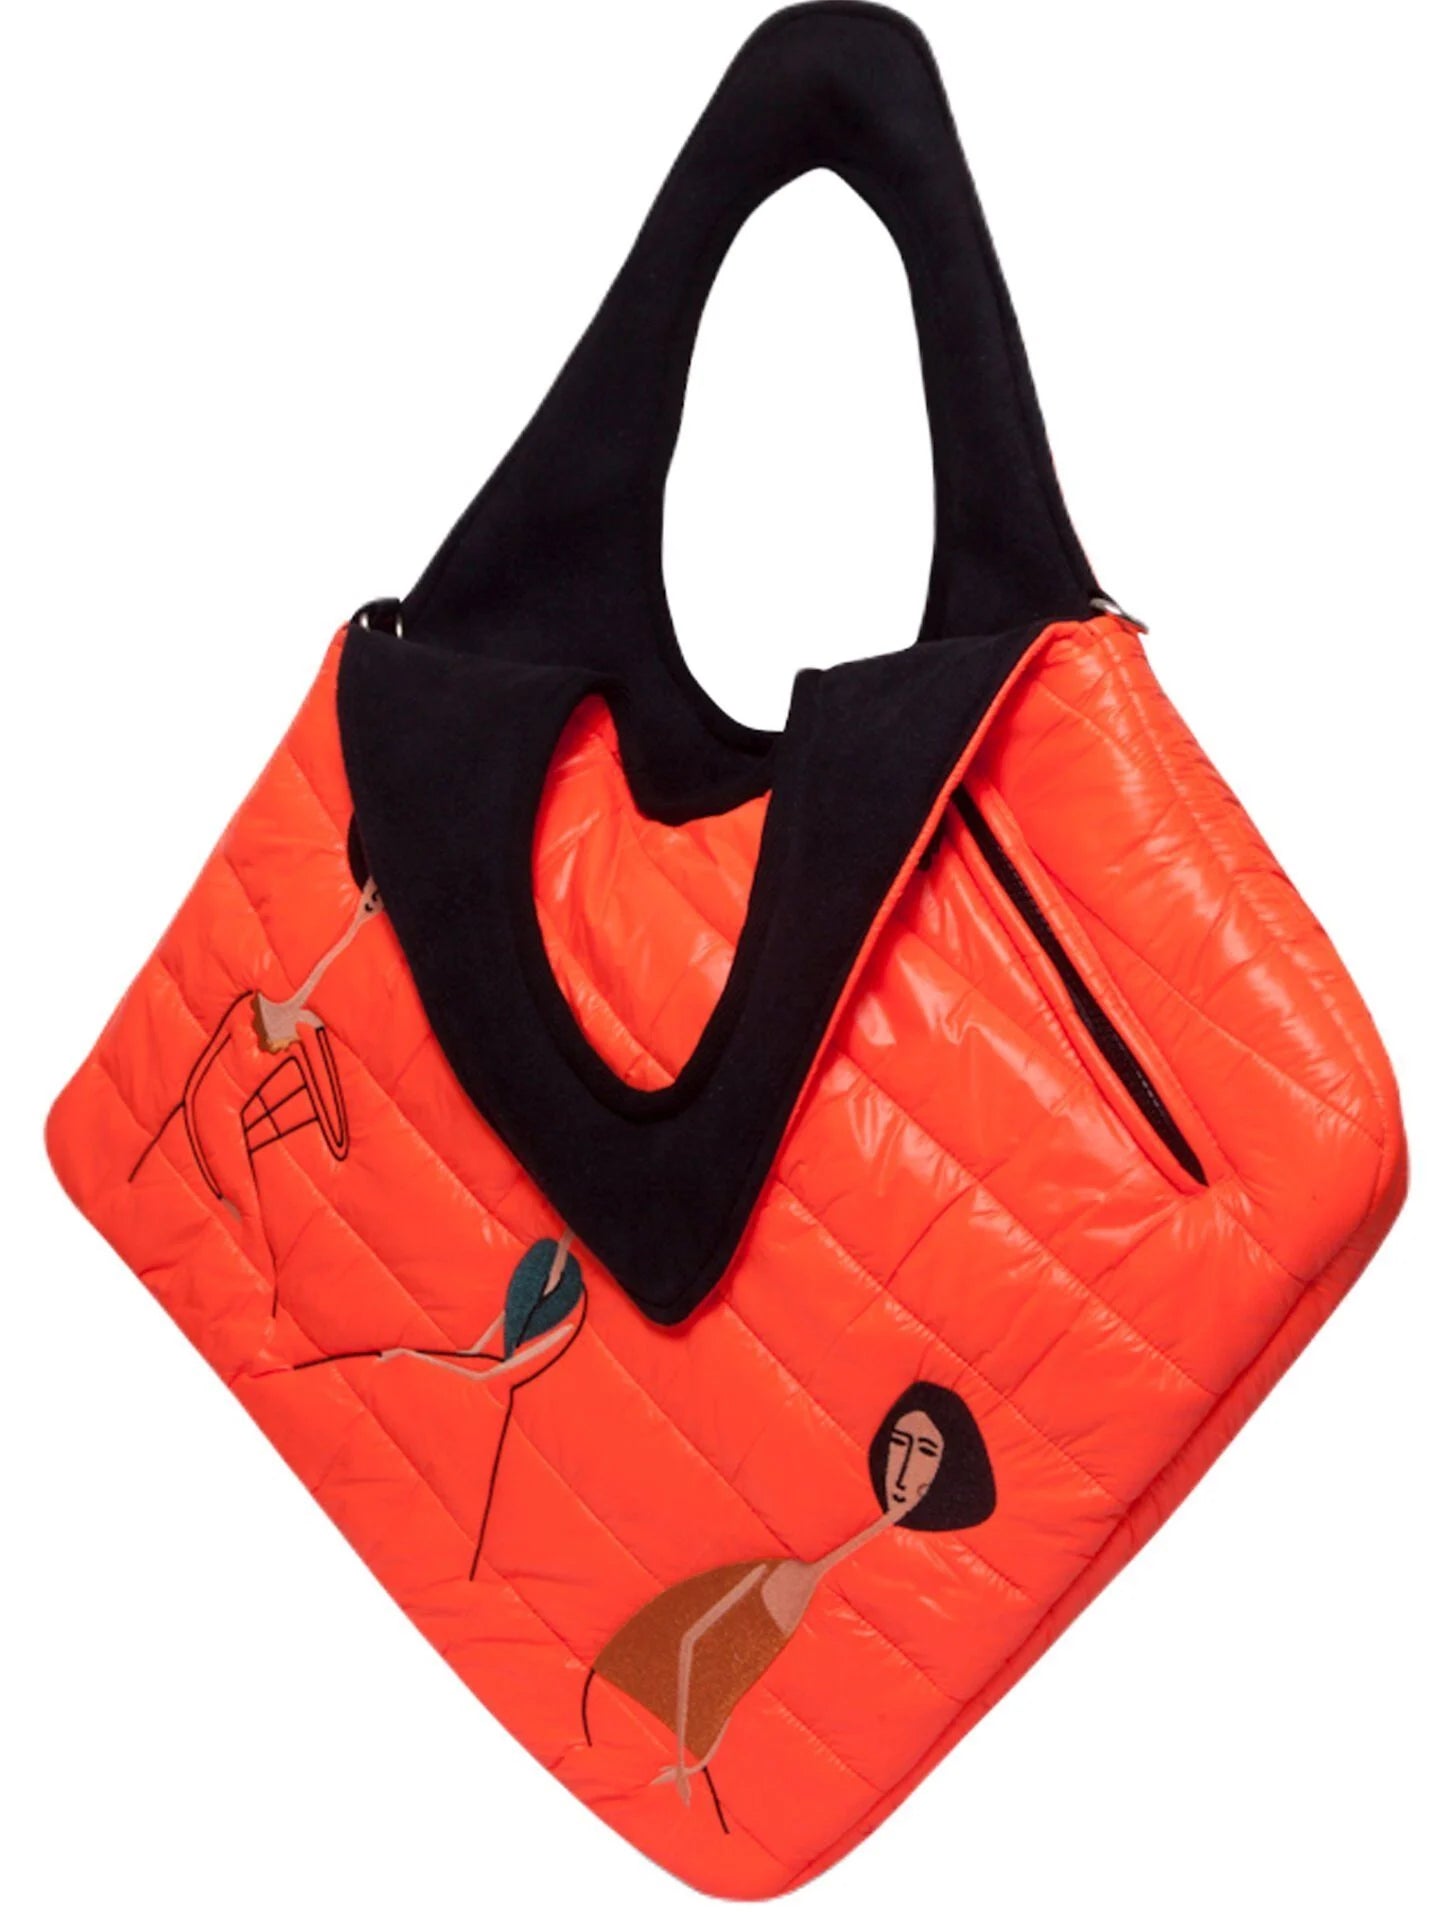 Morikukko Diagonal Tote Bag Modigliani Orange Women's Shoulder Bag